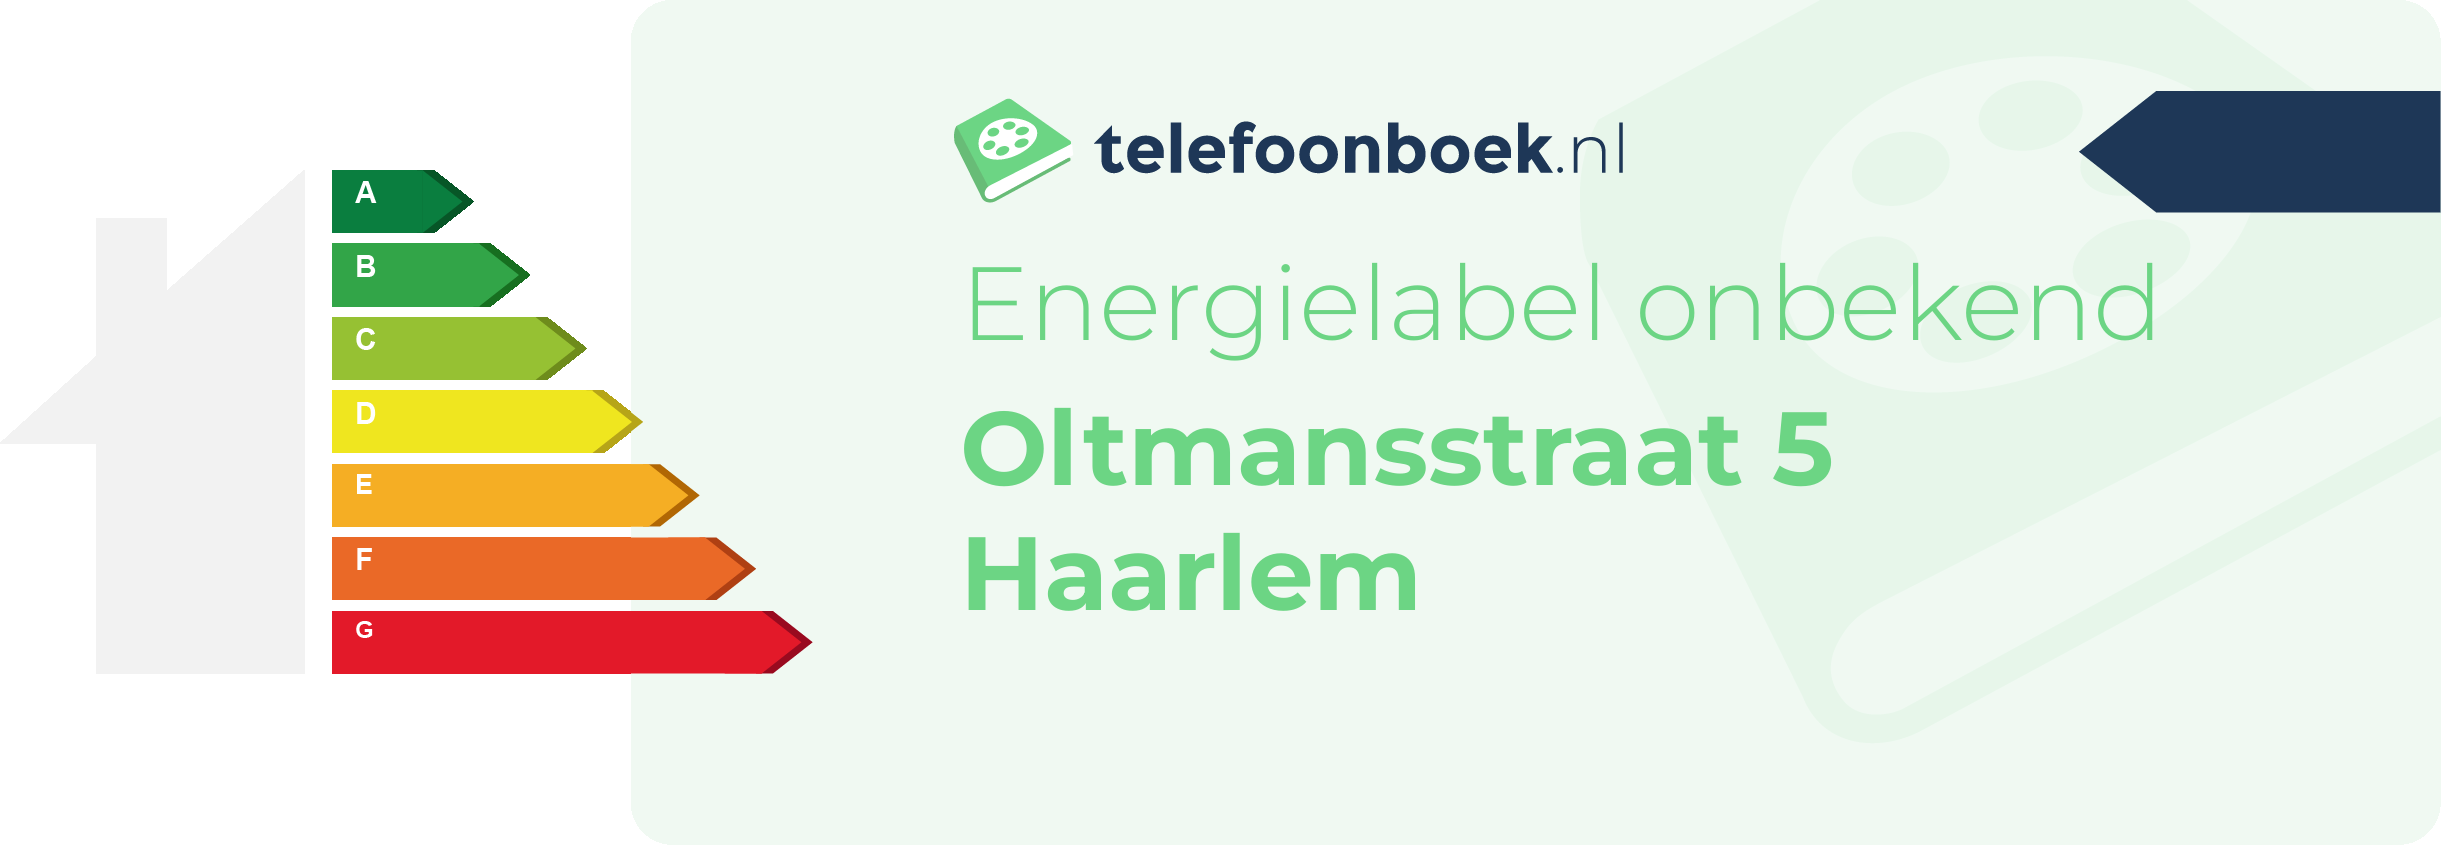 Energielabel Oltmansstraat 5 Haarlem